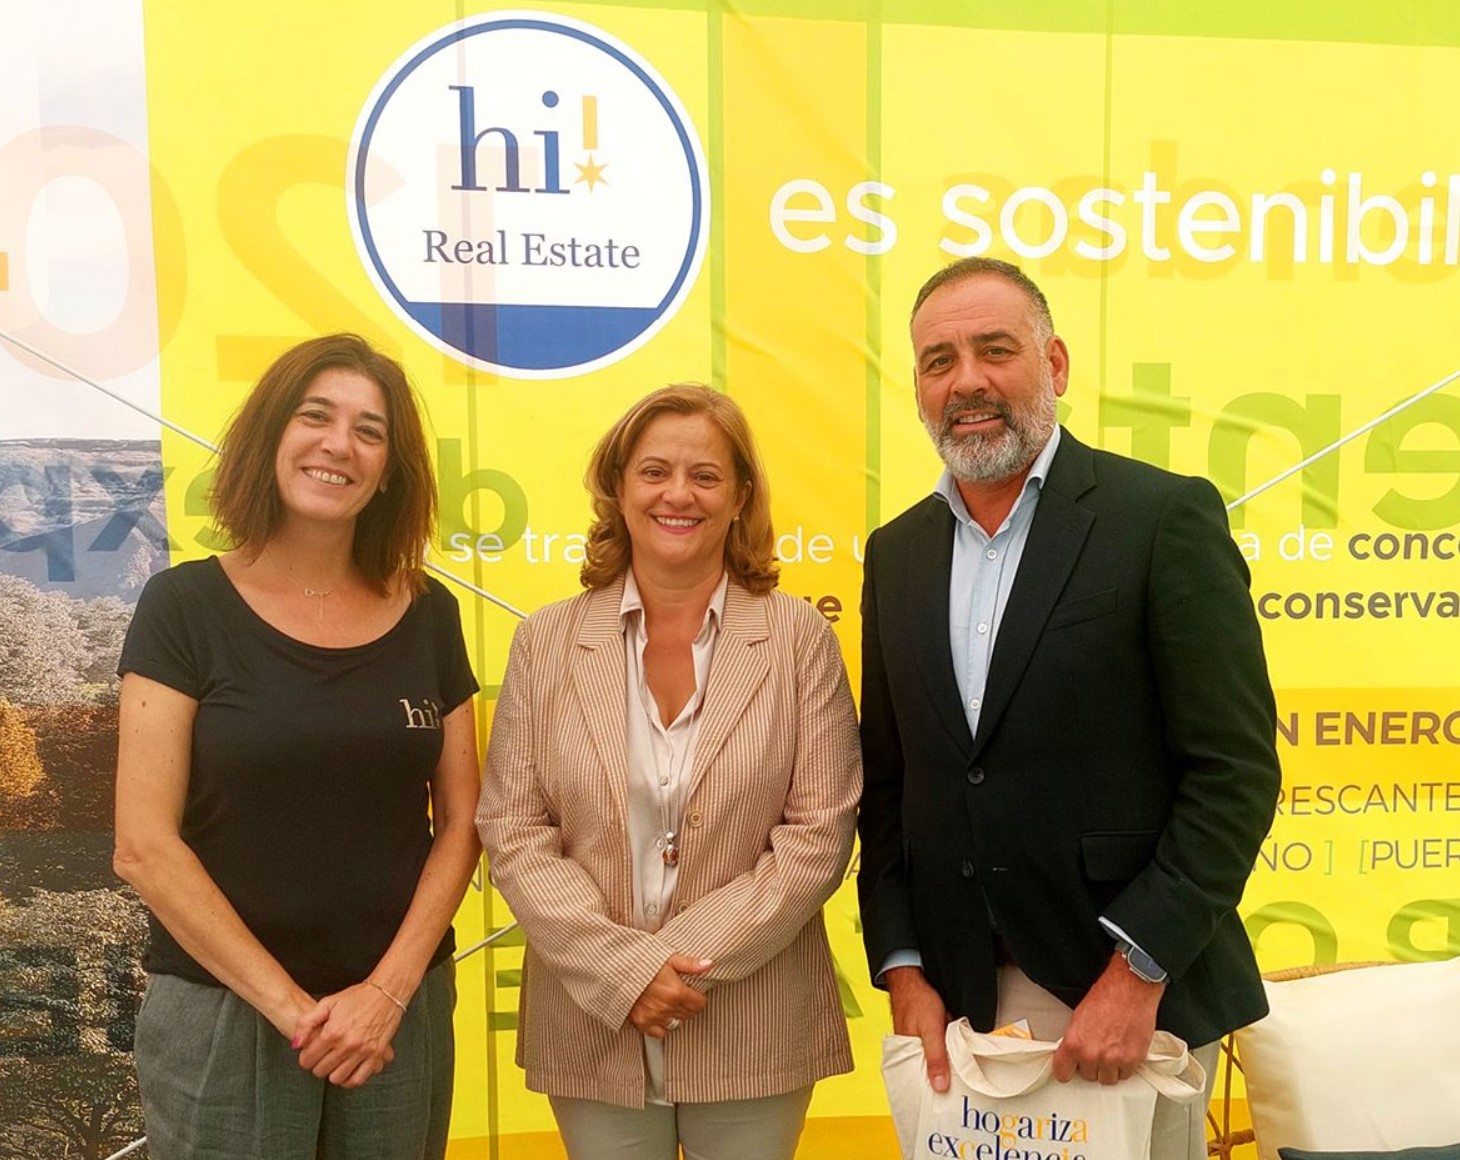 Foto: Montse Cercadillo Calvo (Directora división Inmobiliaria hi! Real Estate), Isabel Ruiz Maldonado (Primera teniente de Alcalde de Alcala de Henares) y Jose Cercadillo Calvo (CEO de hi! Real Estate)